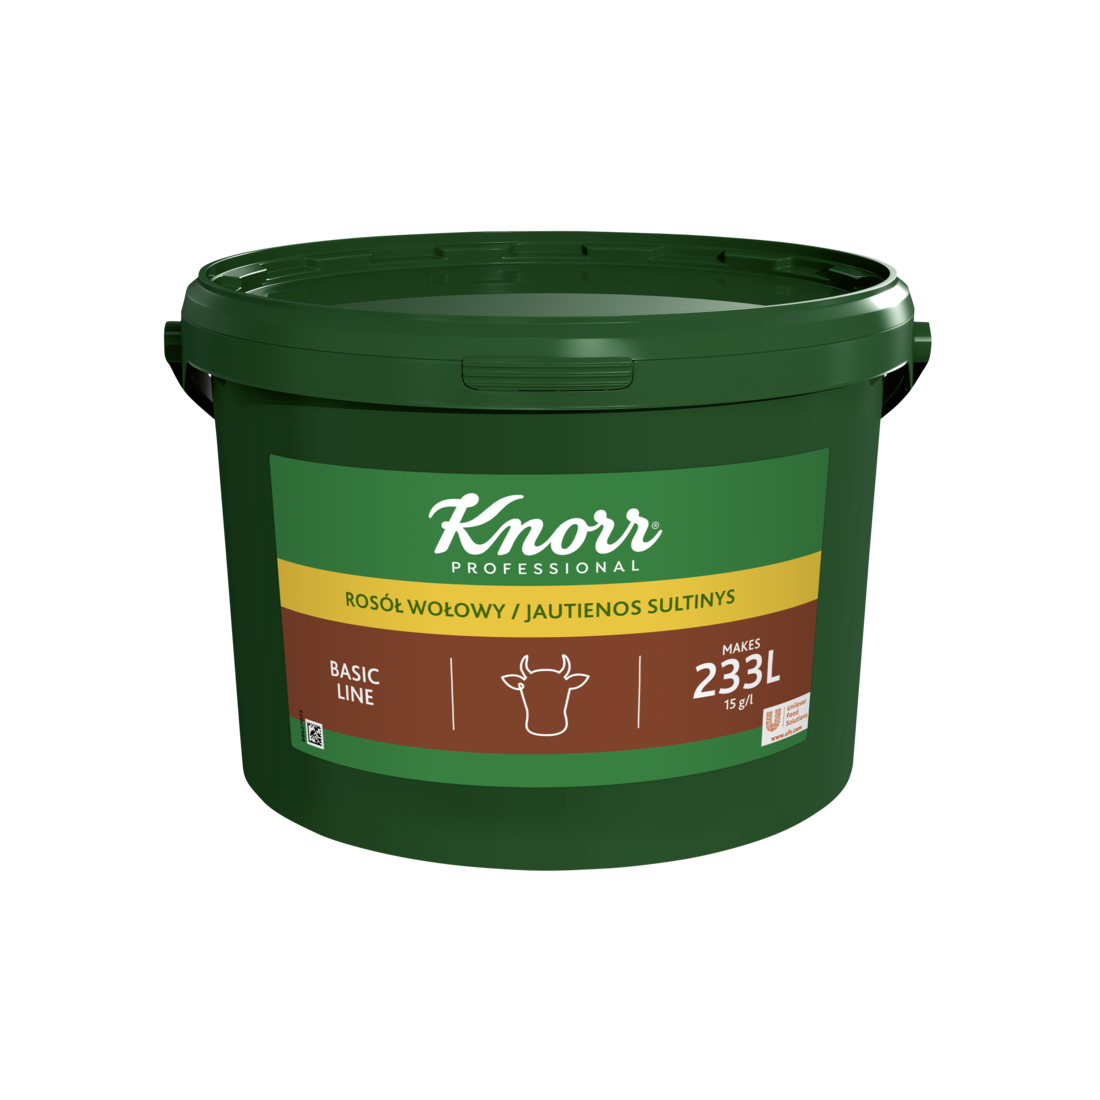 Knorr 1-2-3 Jautienos Sultinio Pagrindas 3,5 kg - 